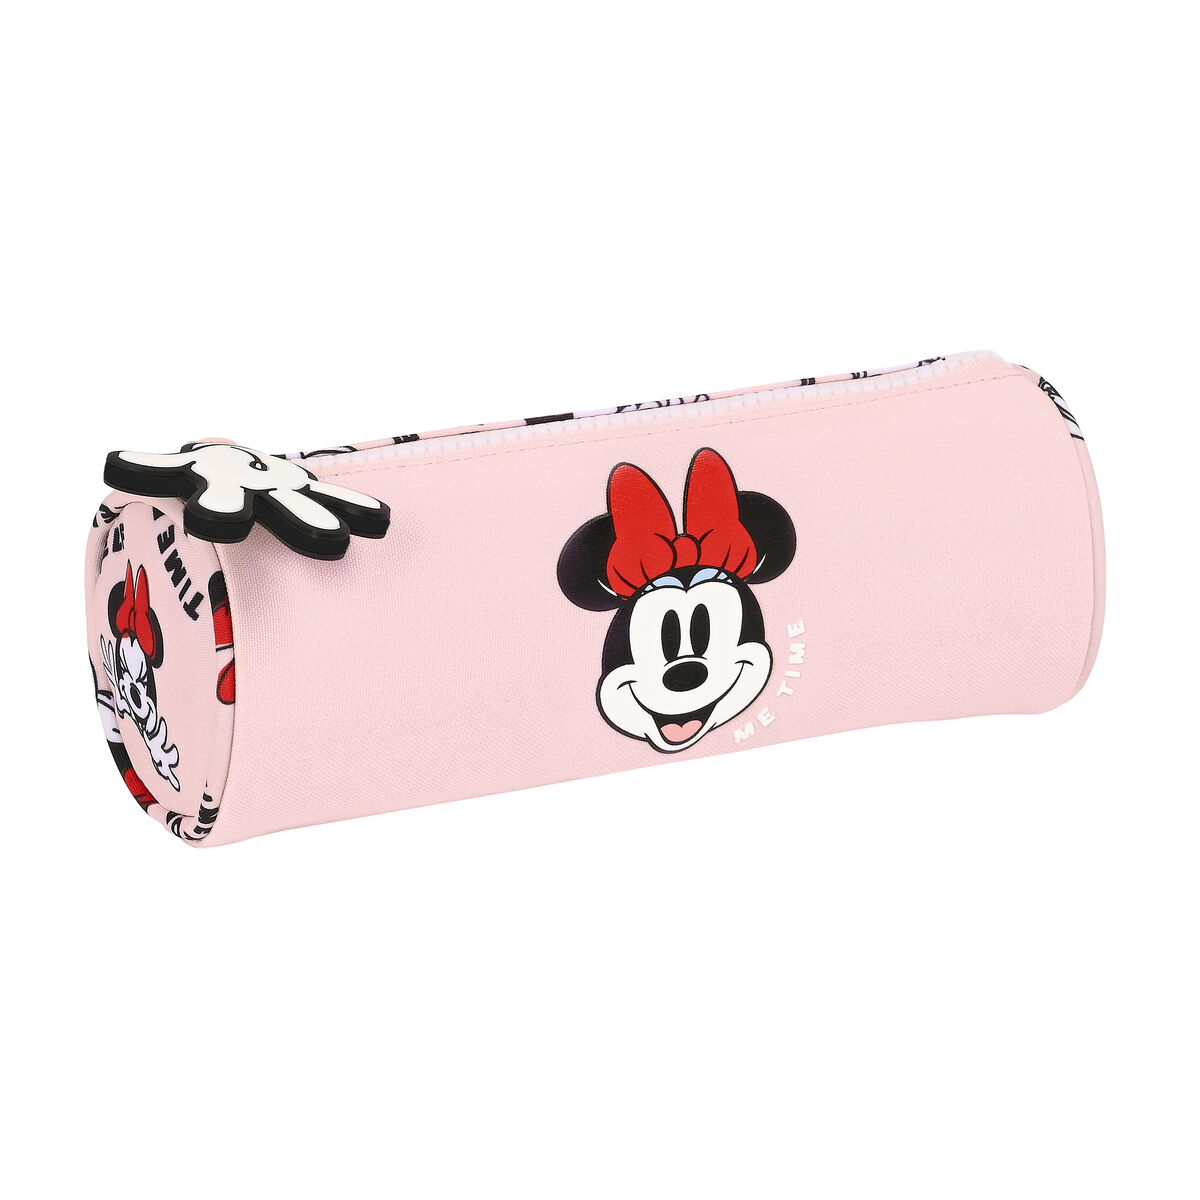 Mp Minnie mouse Faulenzer Schlamperrolle Federtasche Stifttasche Schulmppchen Minnie Mouse Rosa